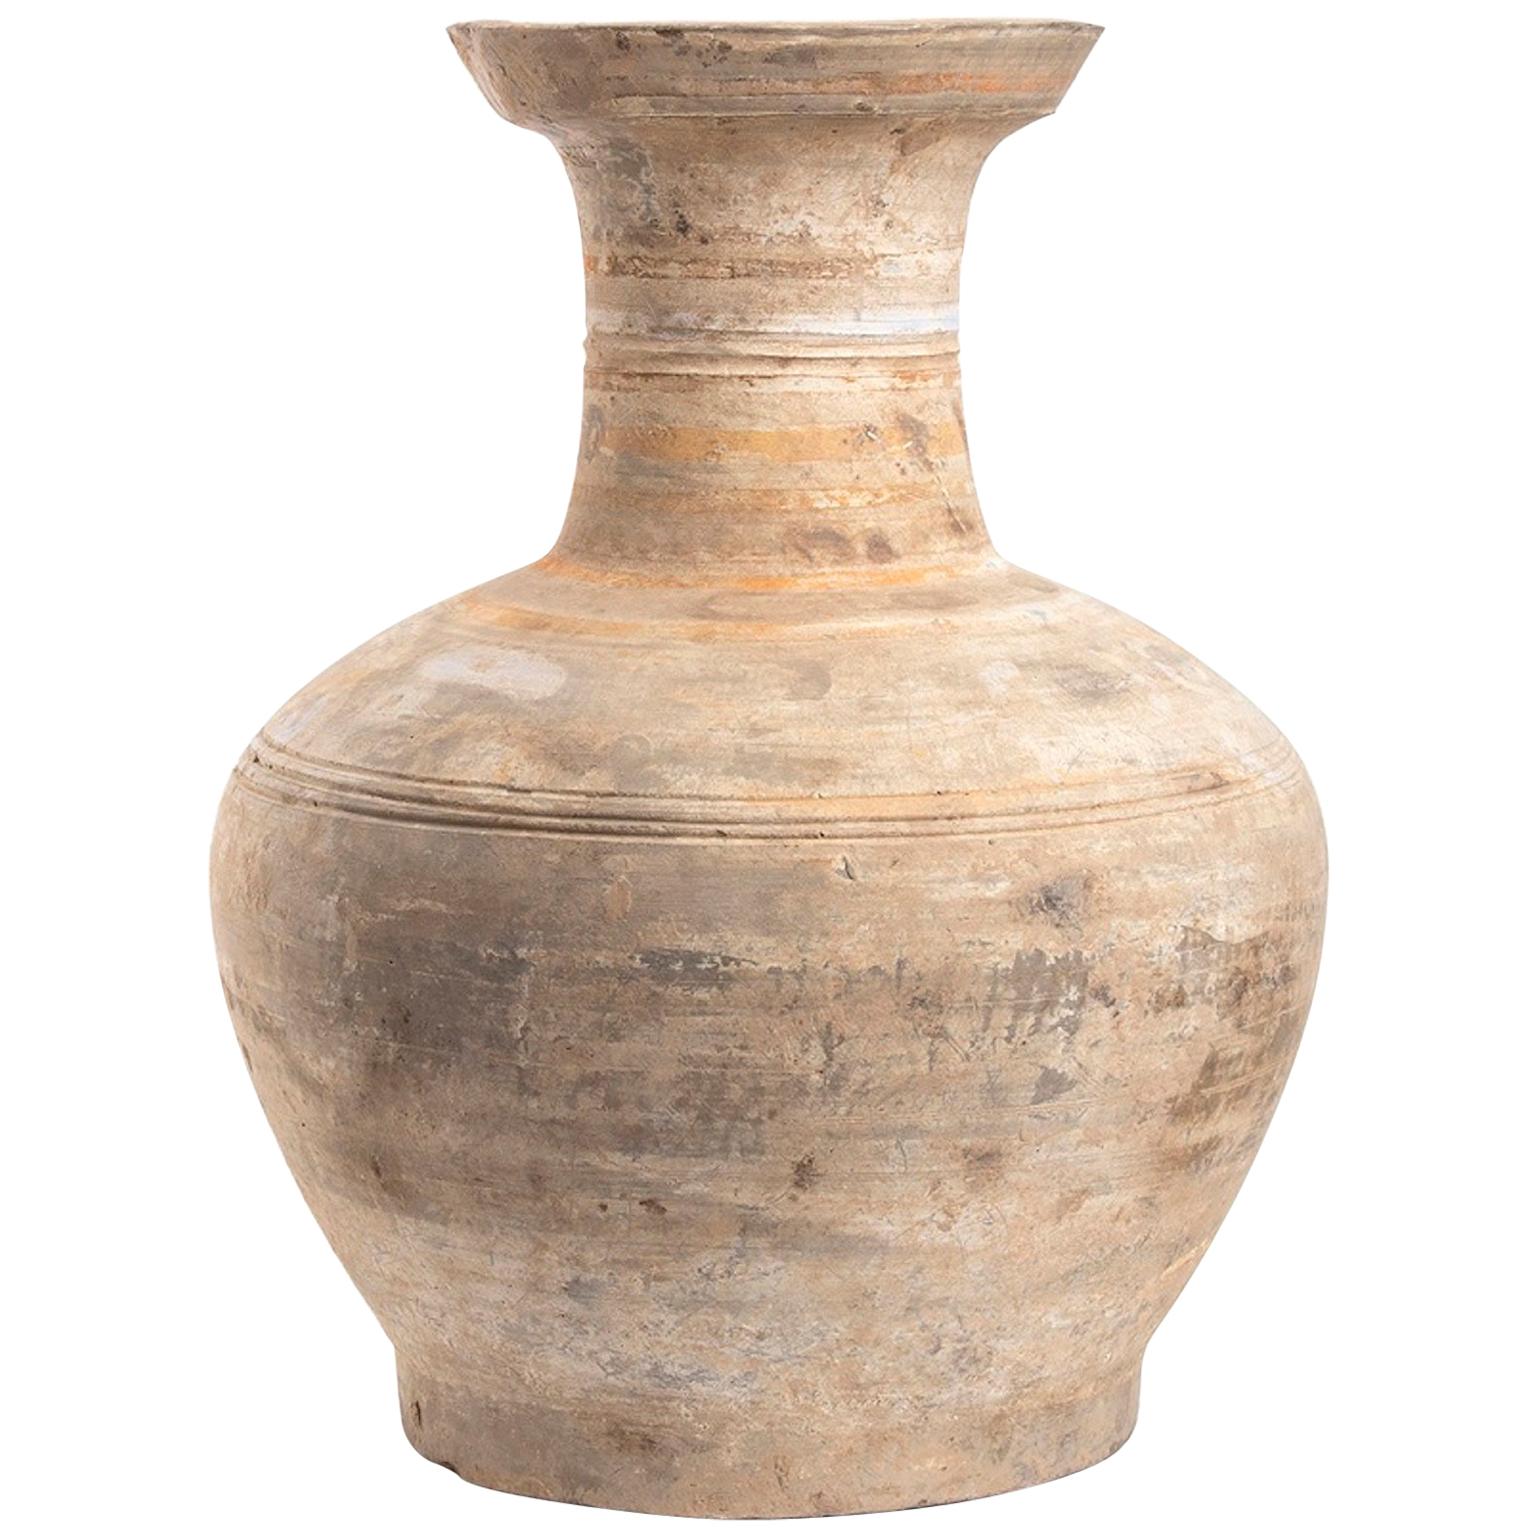 Ancient Ceramic Vase, Han Dynasty China, 3rd BC/3rd AD